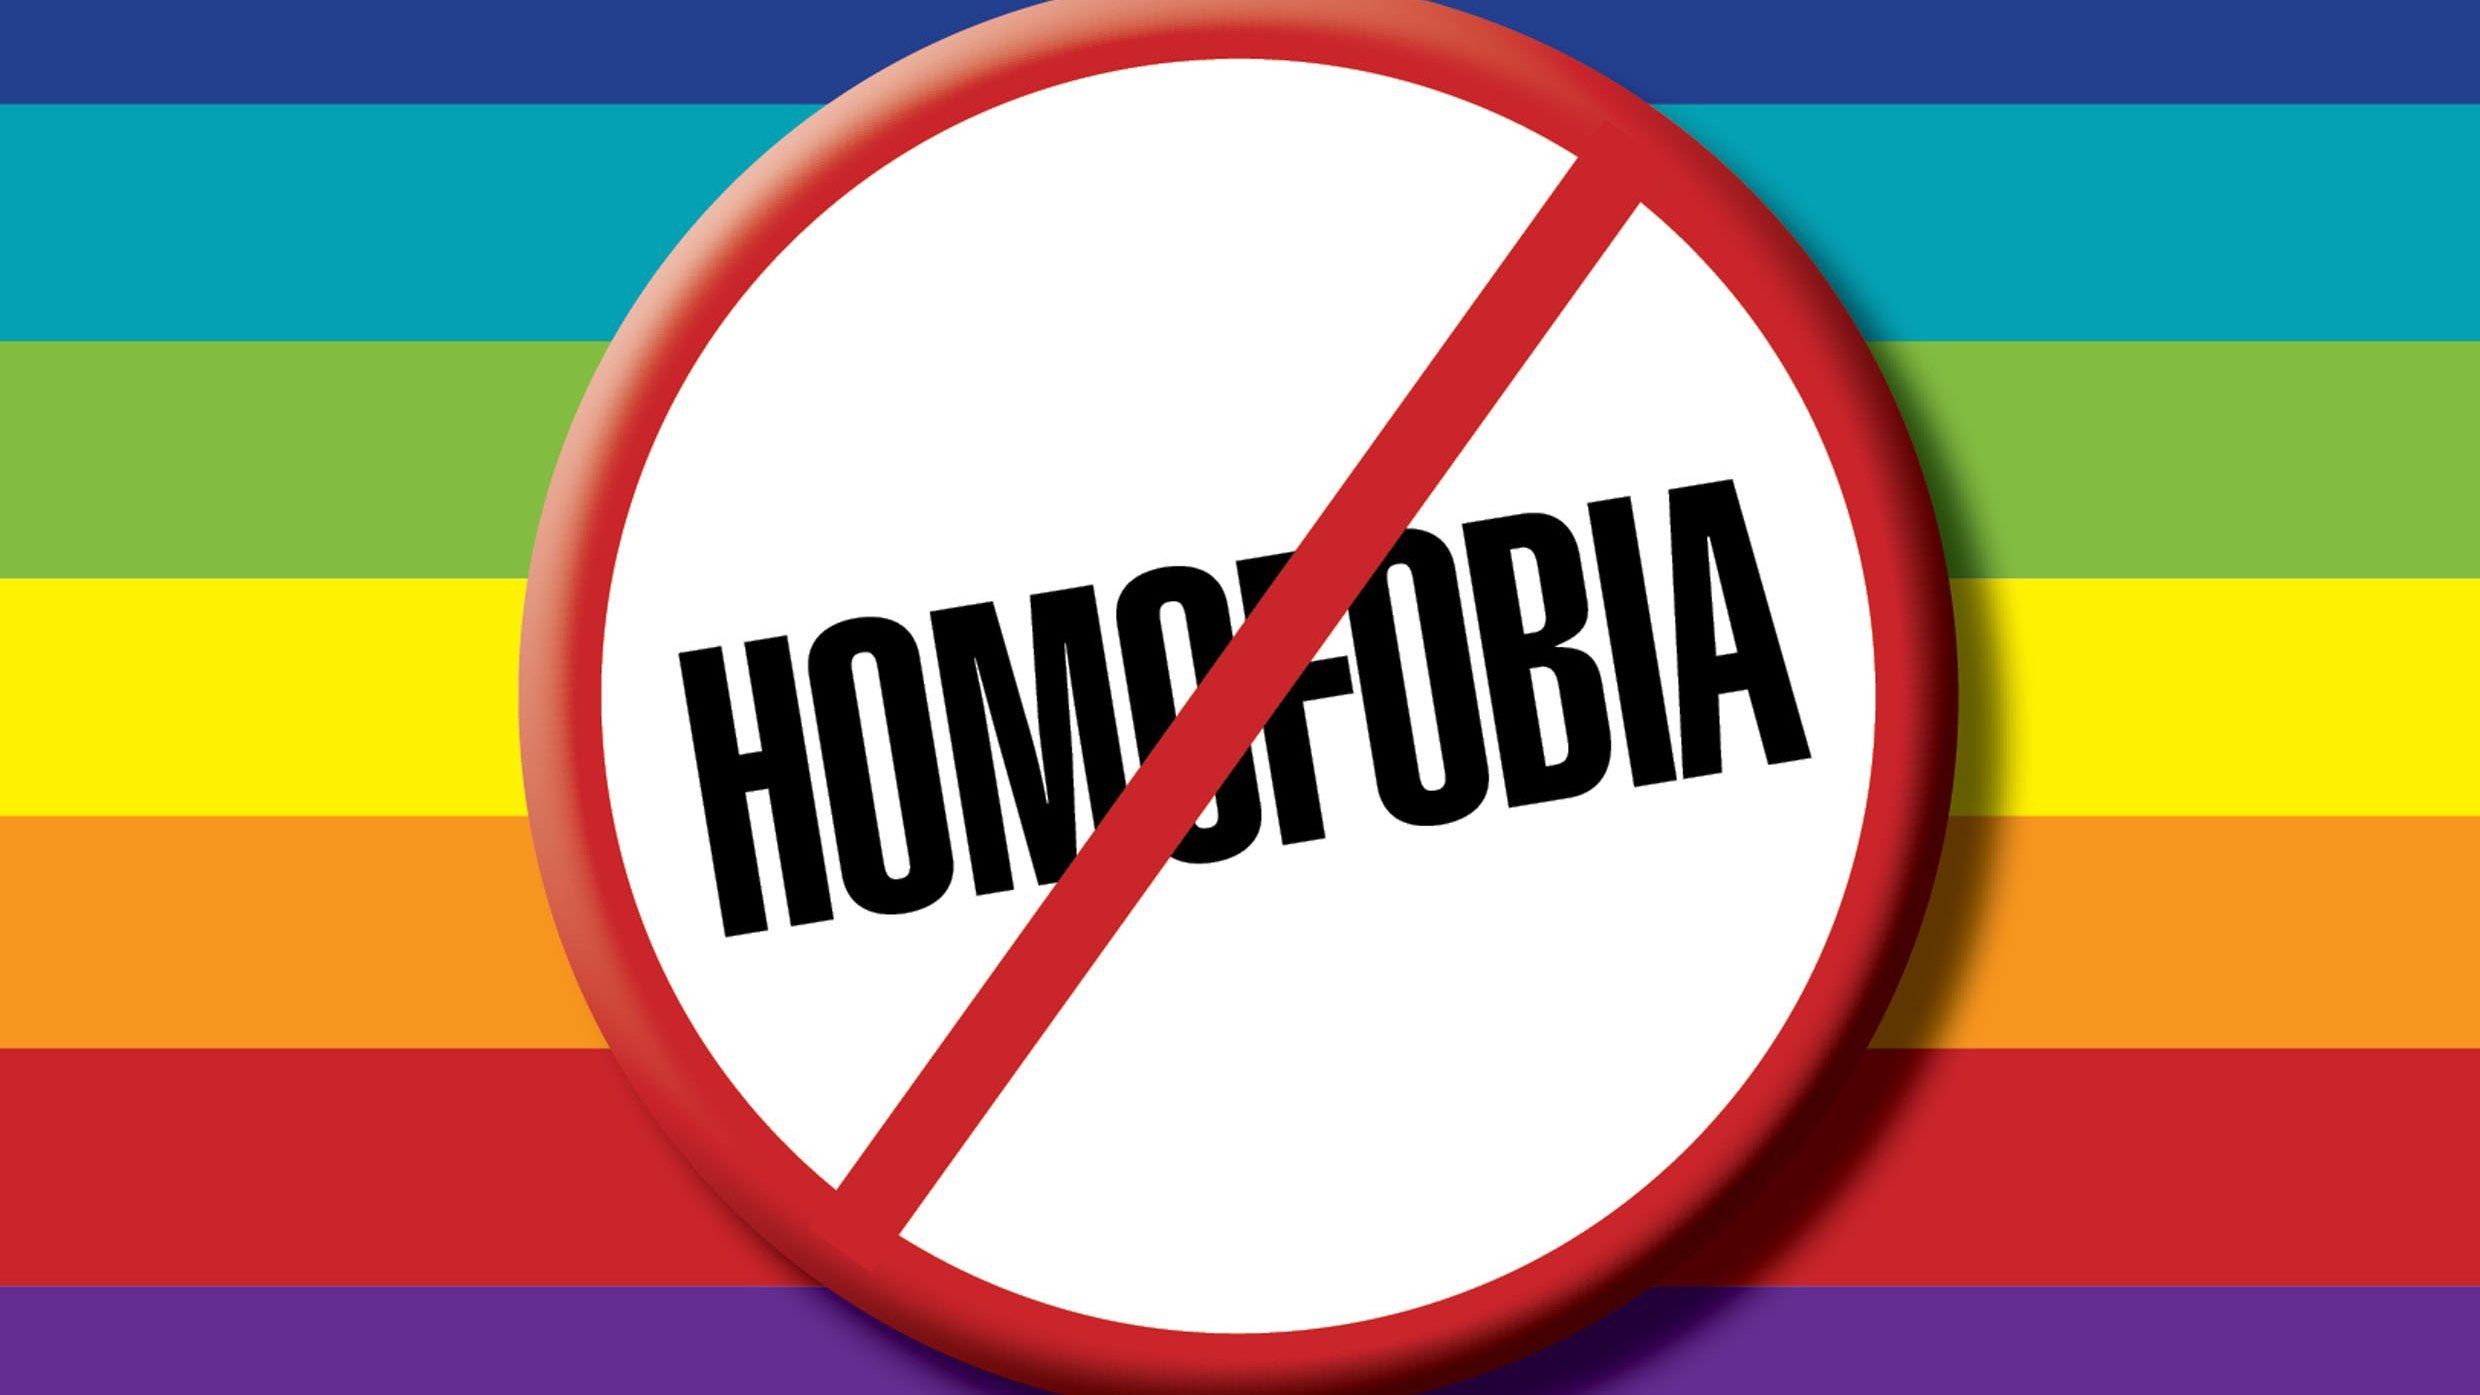 Mensagens de combate à homofobia